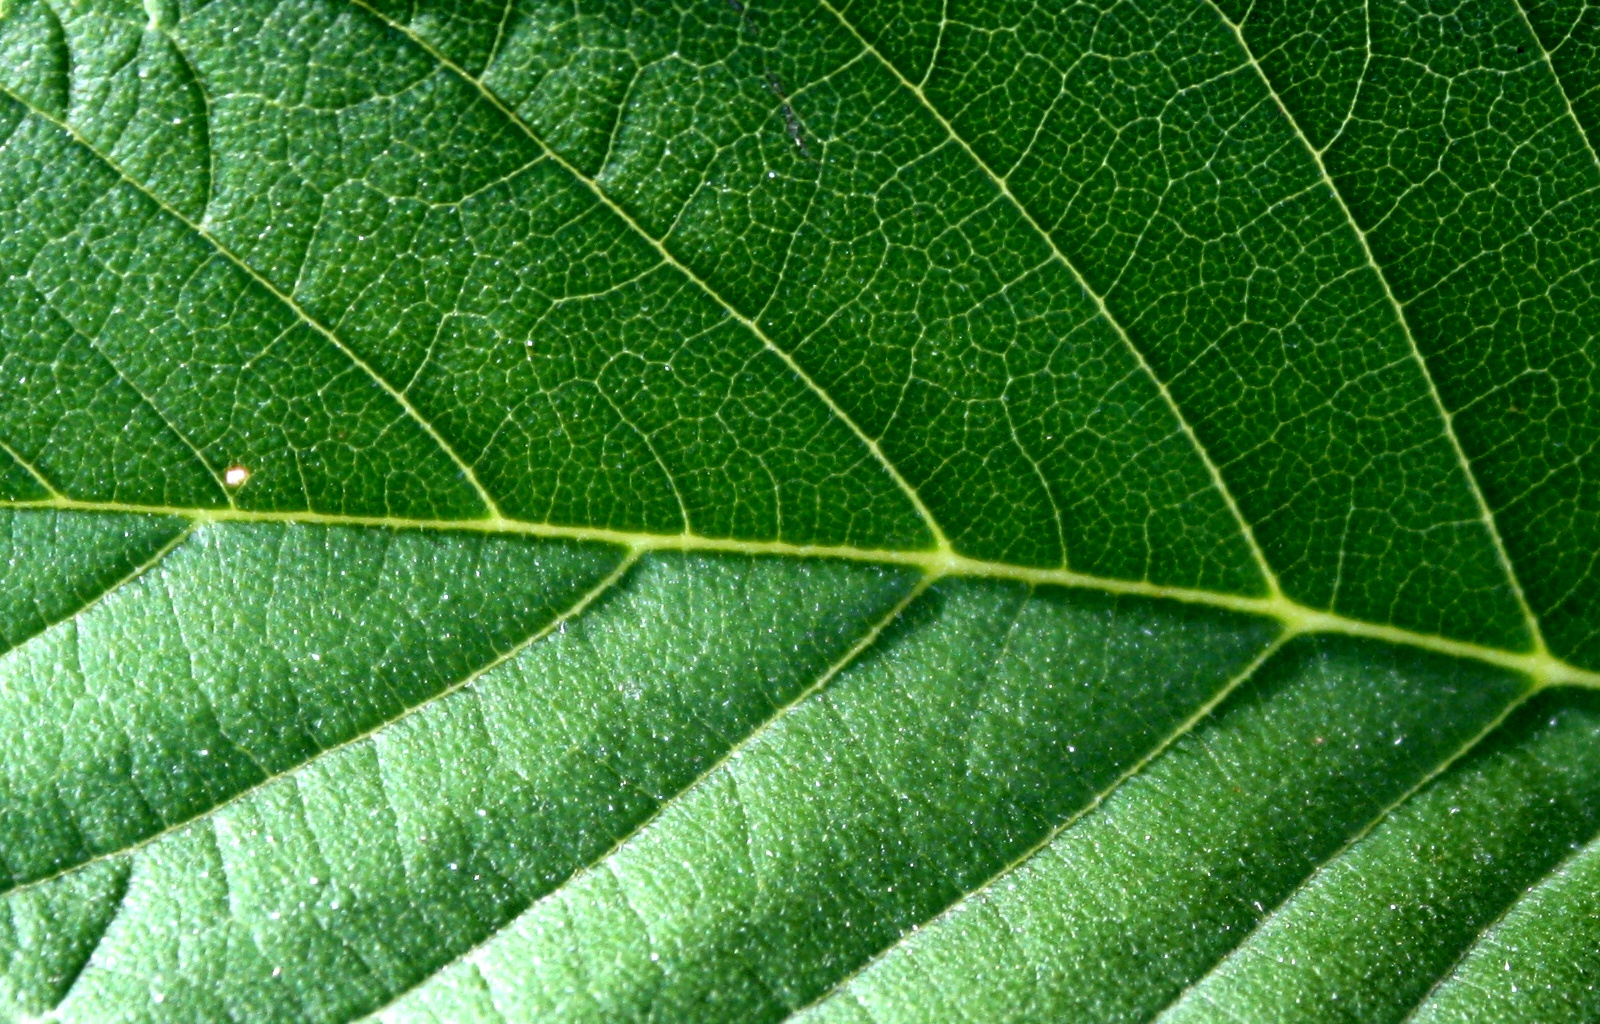 Leaf Texture Picture. Free Photograph. Photo Public Domain